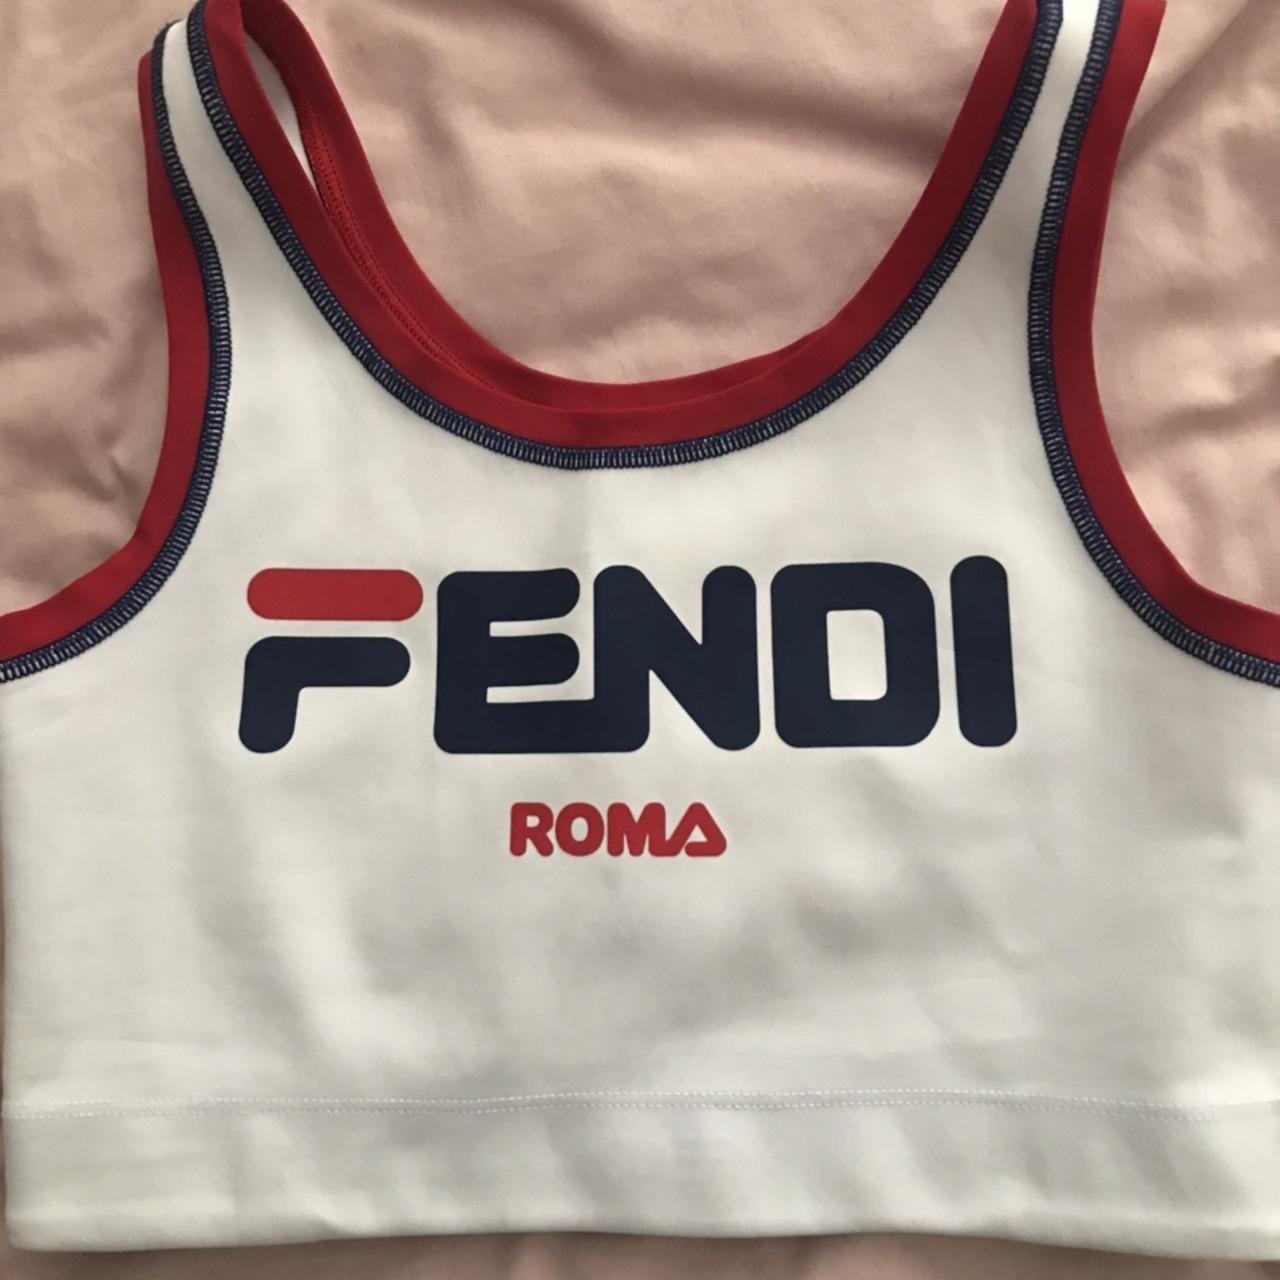 Fendi Sports bra size 42 (Eur). Bought from Farfetch - Depop